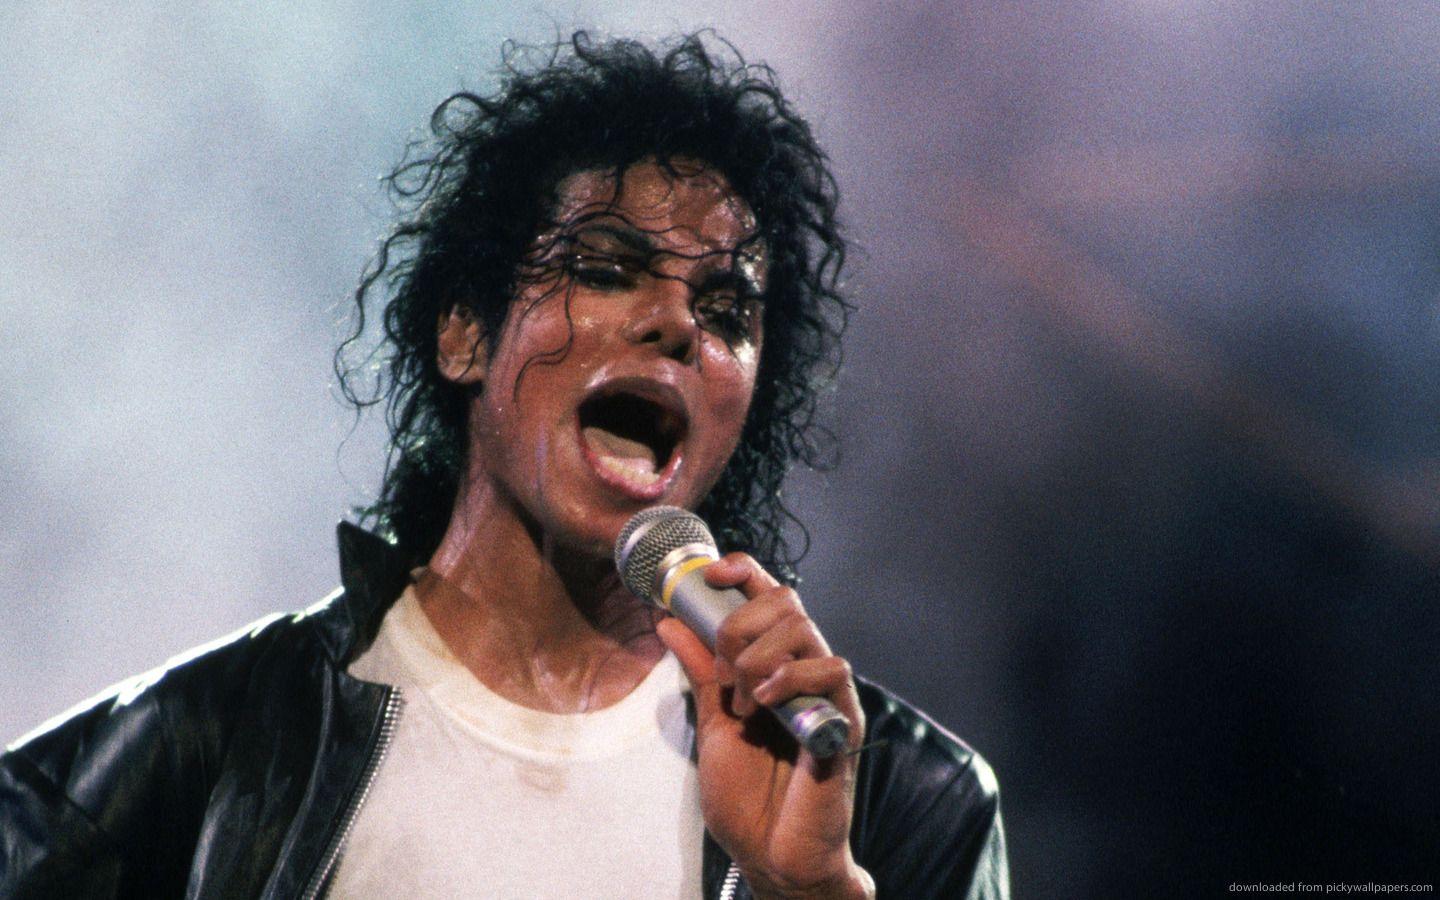 Download 1440x900 Michael Jackson Singing Wallpaper